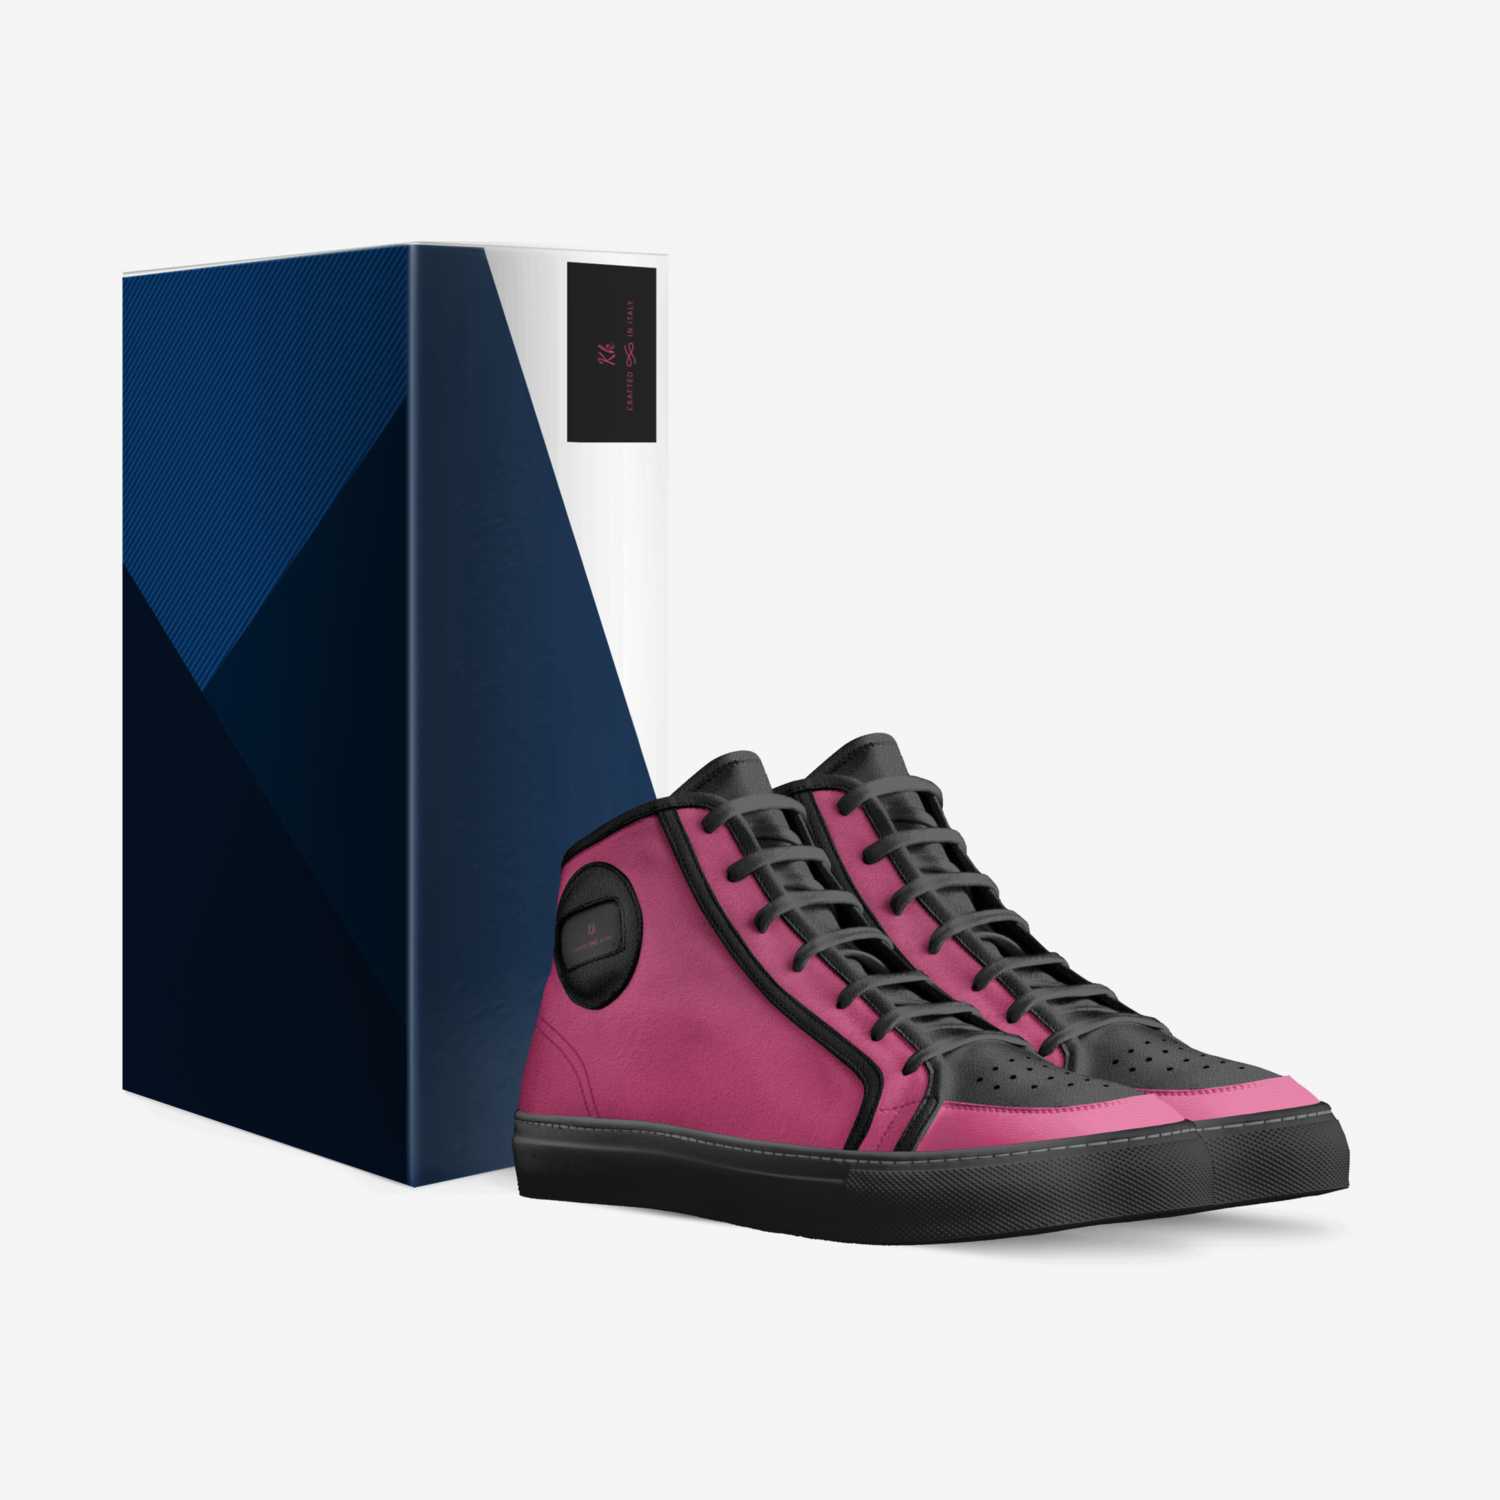 Kk custom made in Italy shoes by Mickala Washington | Box view